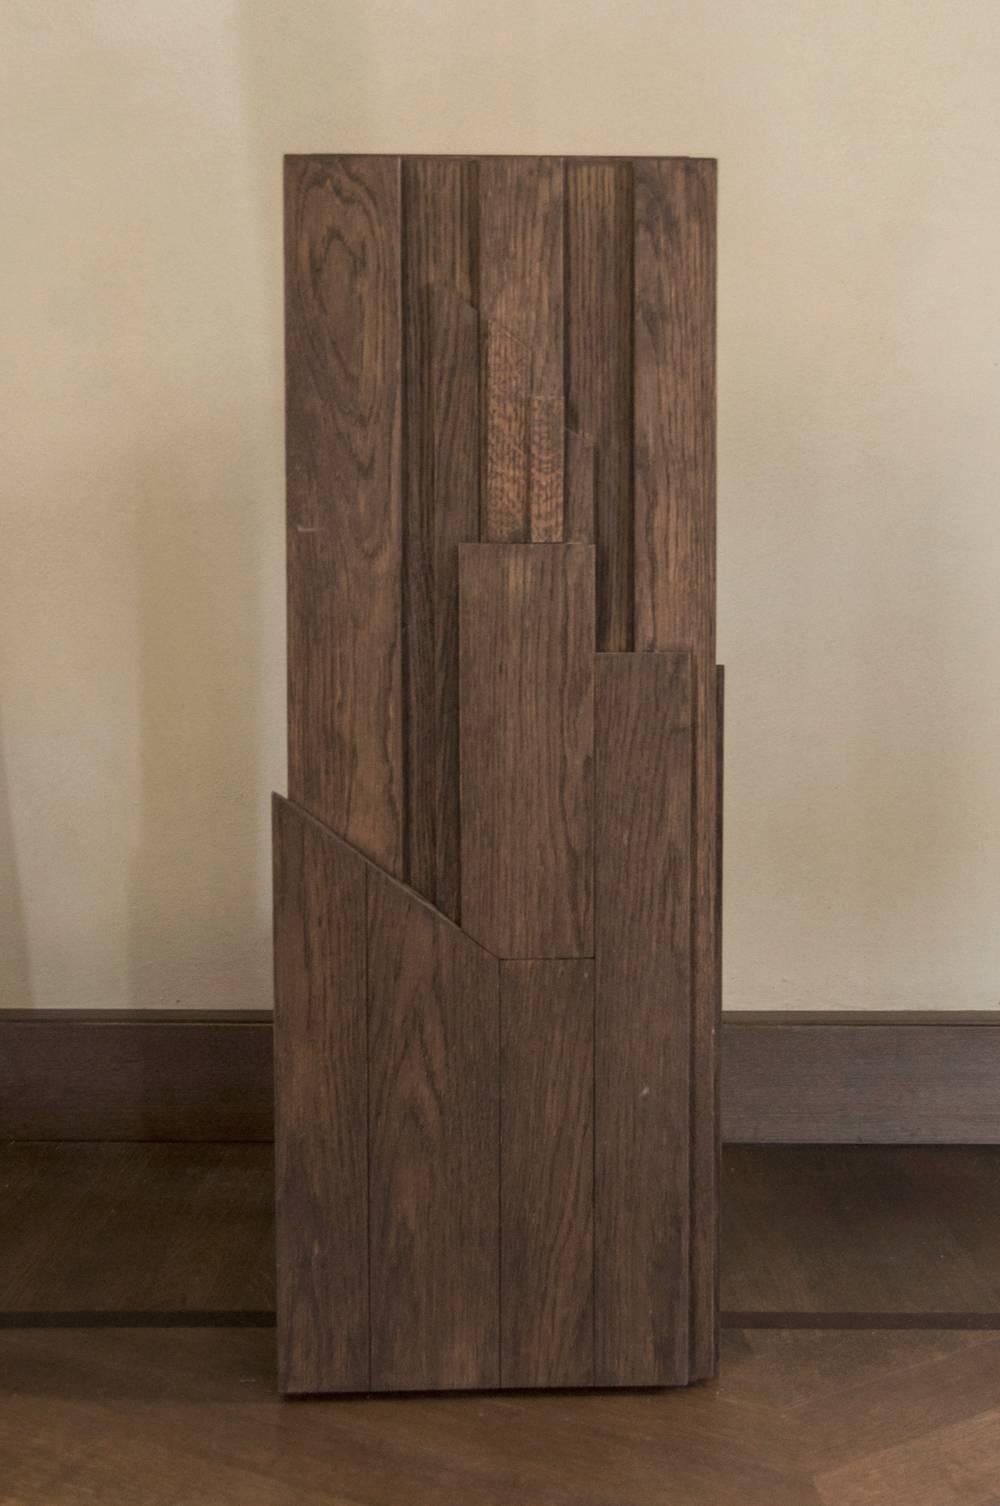 Cette colonne de bois contemporaine présente une surface bien sculptée. Il s'agit d'un élément central dans chaque pièce et il peut mettre en valeur les objets qui y sont posés. Design by DD Dimore, Italie.
De plus, il devient un vase (en enlevant